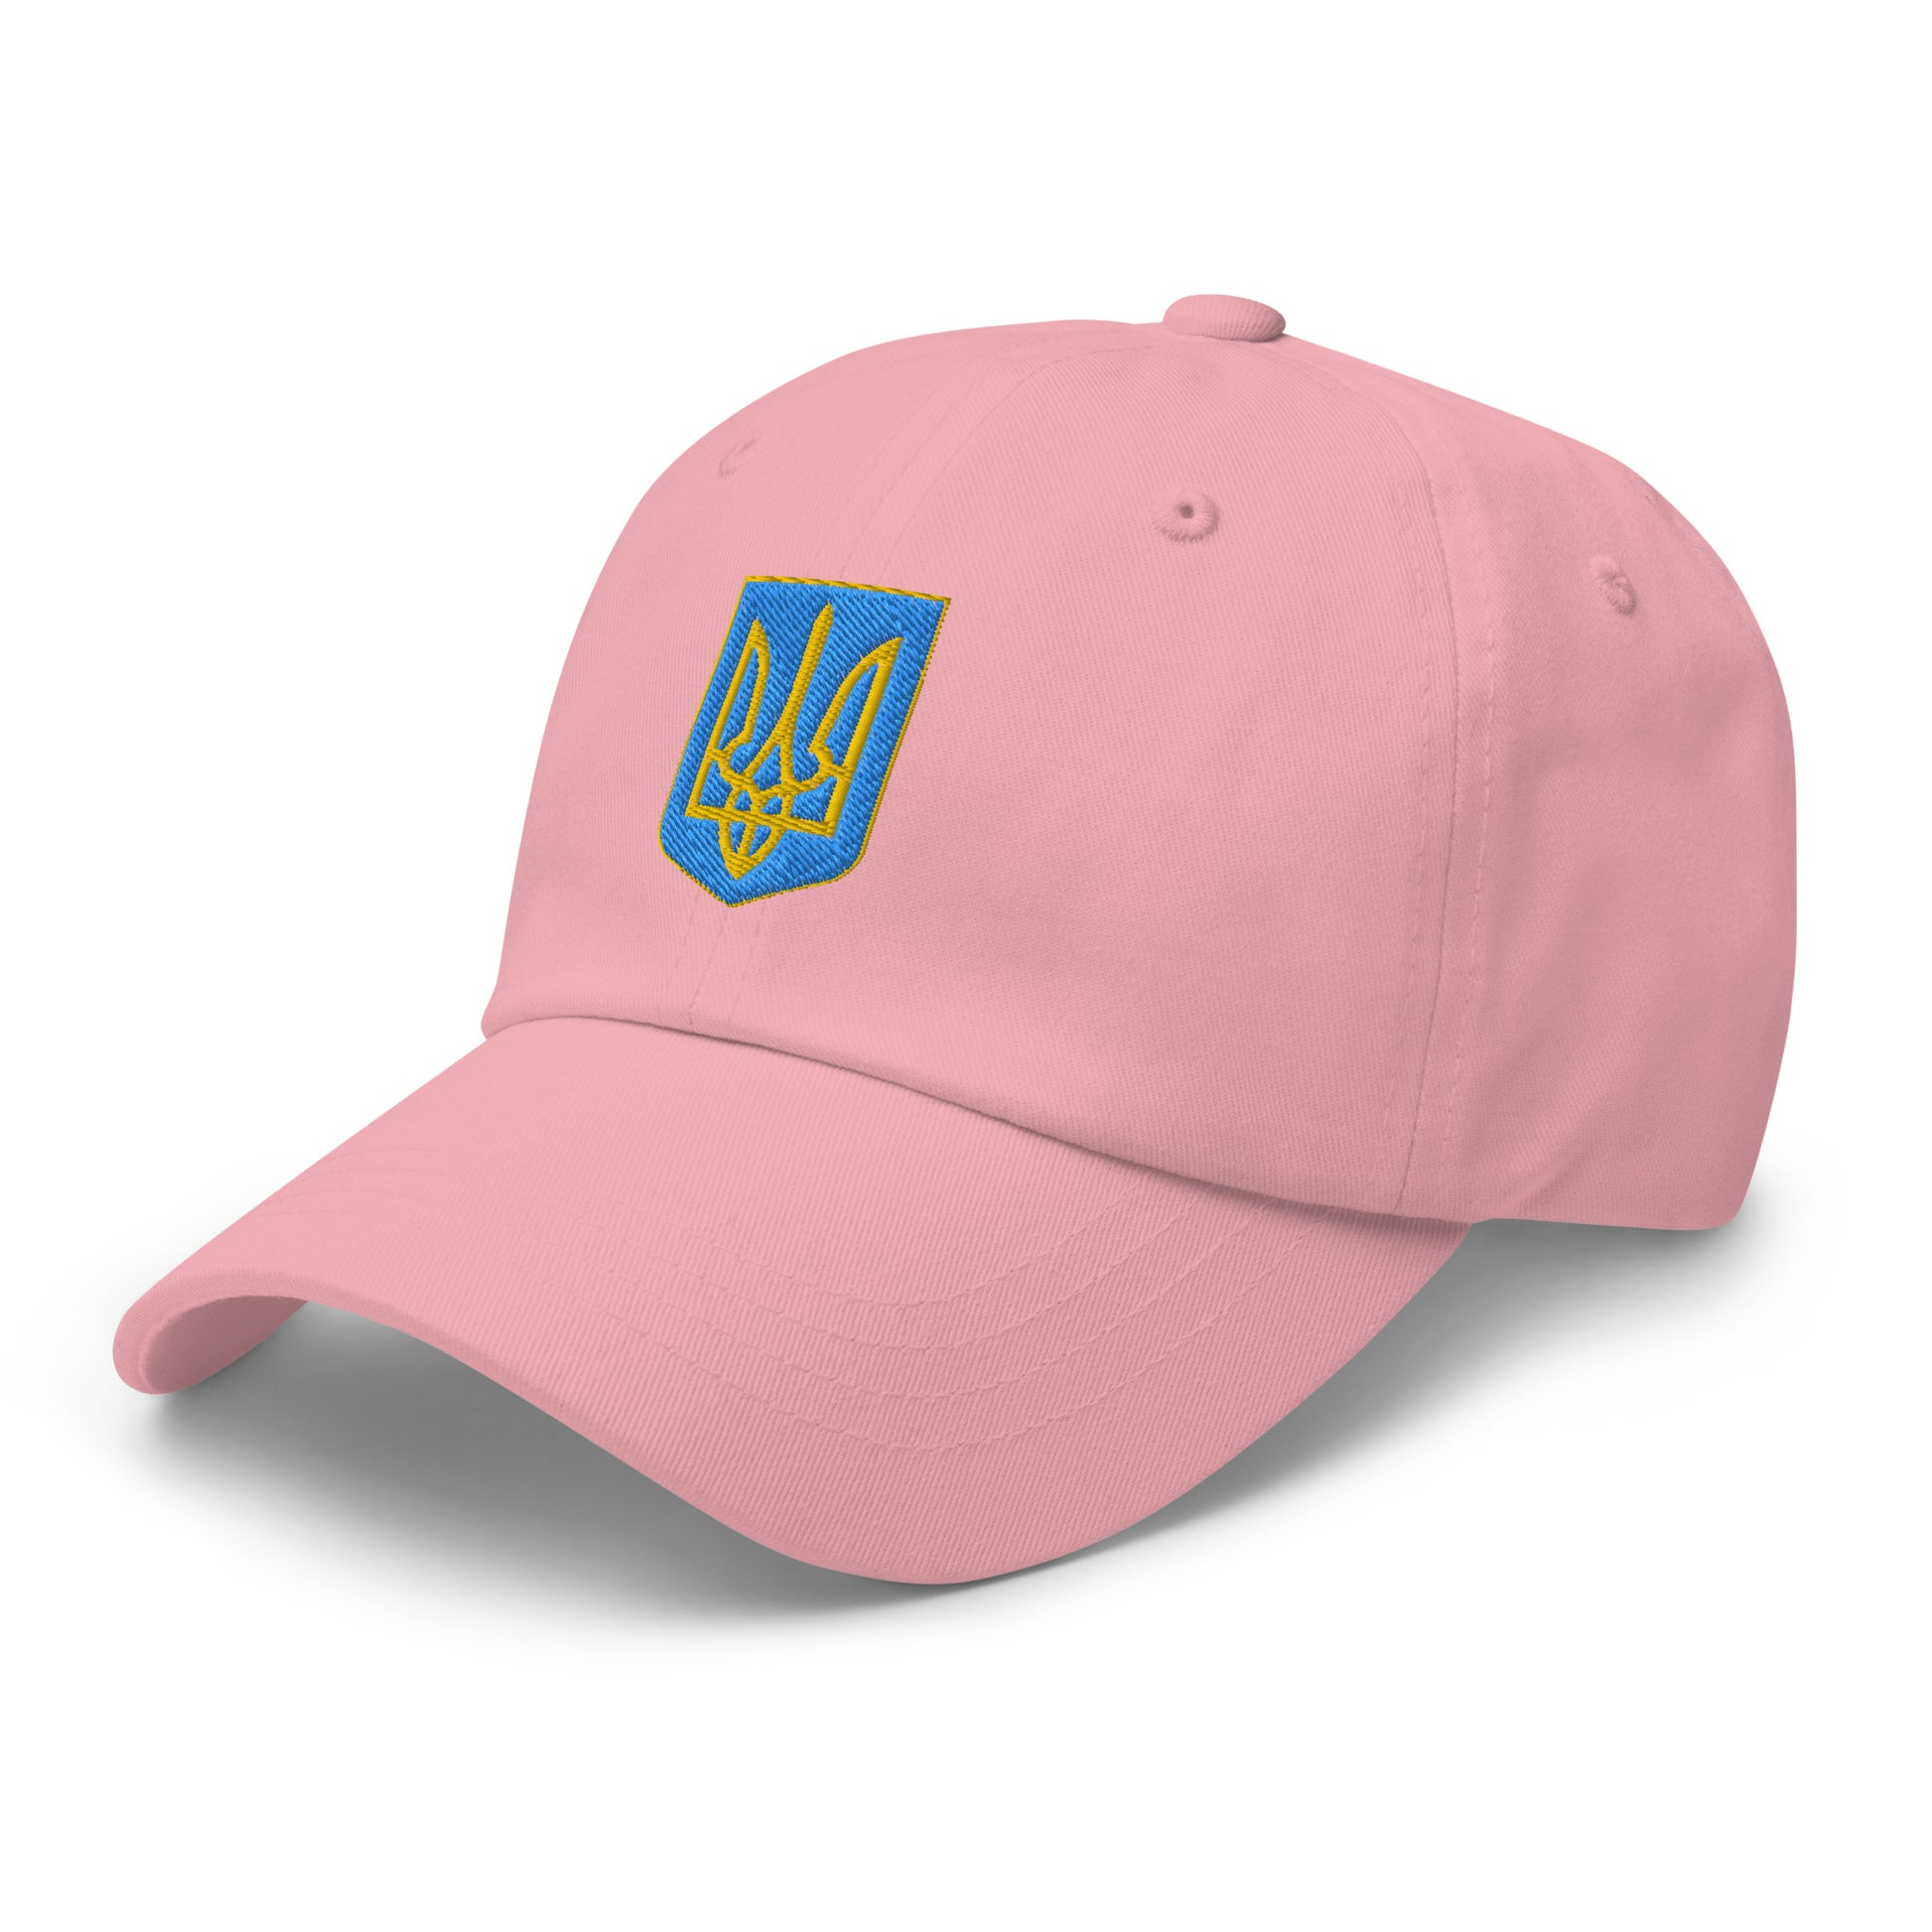 Embroidered Ukraine pink Dad Hat